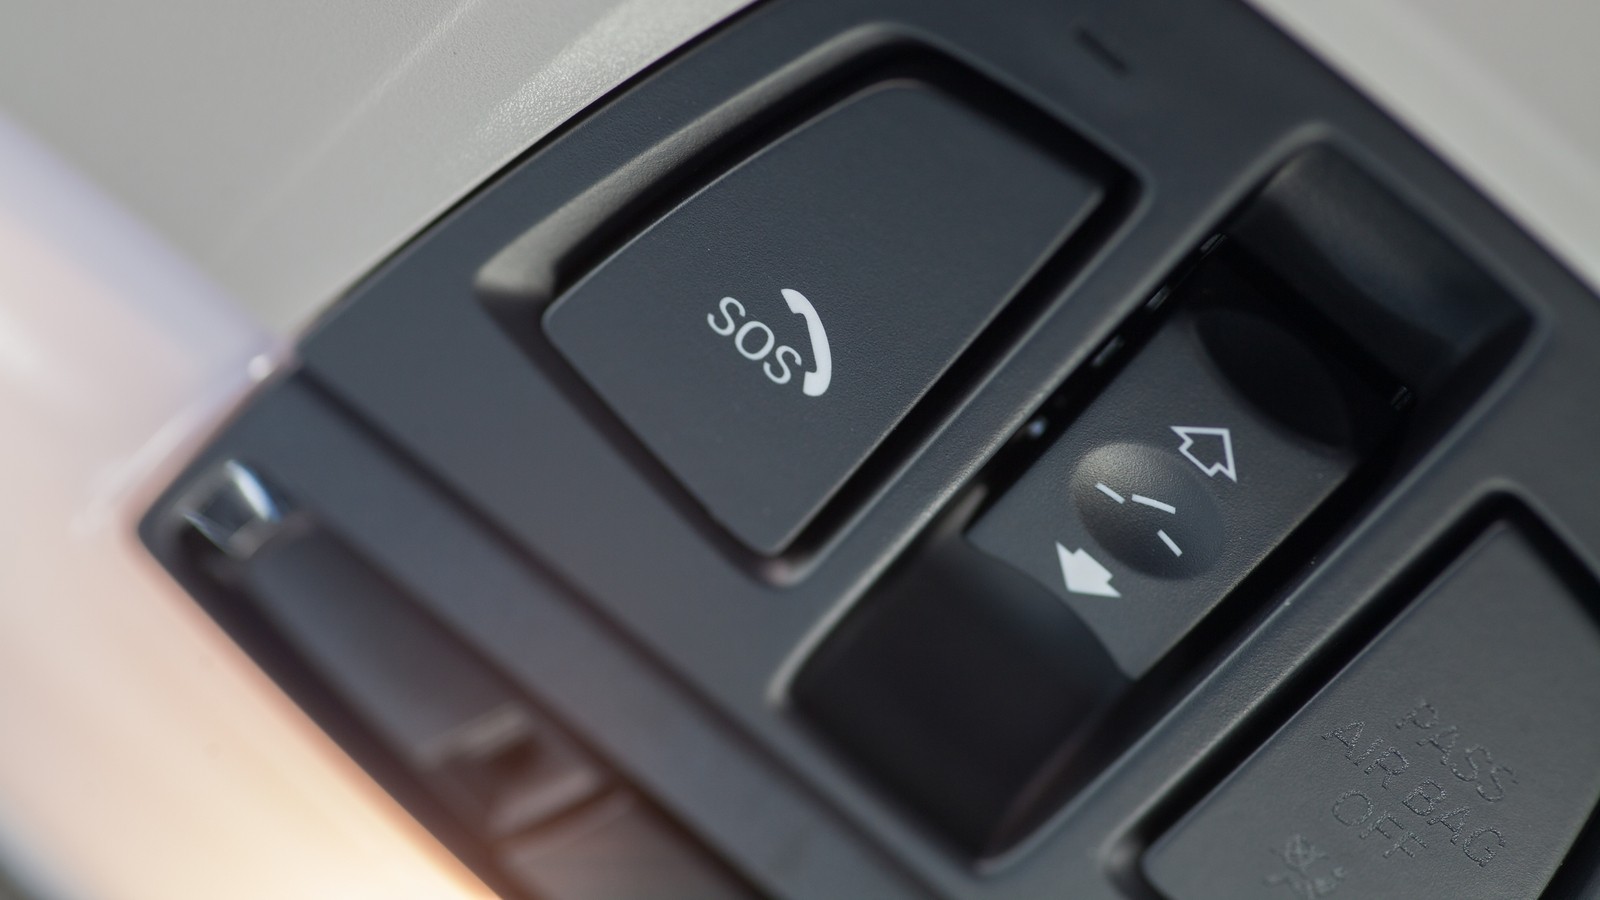 Car SOS button